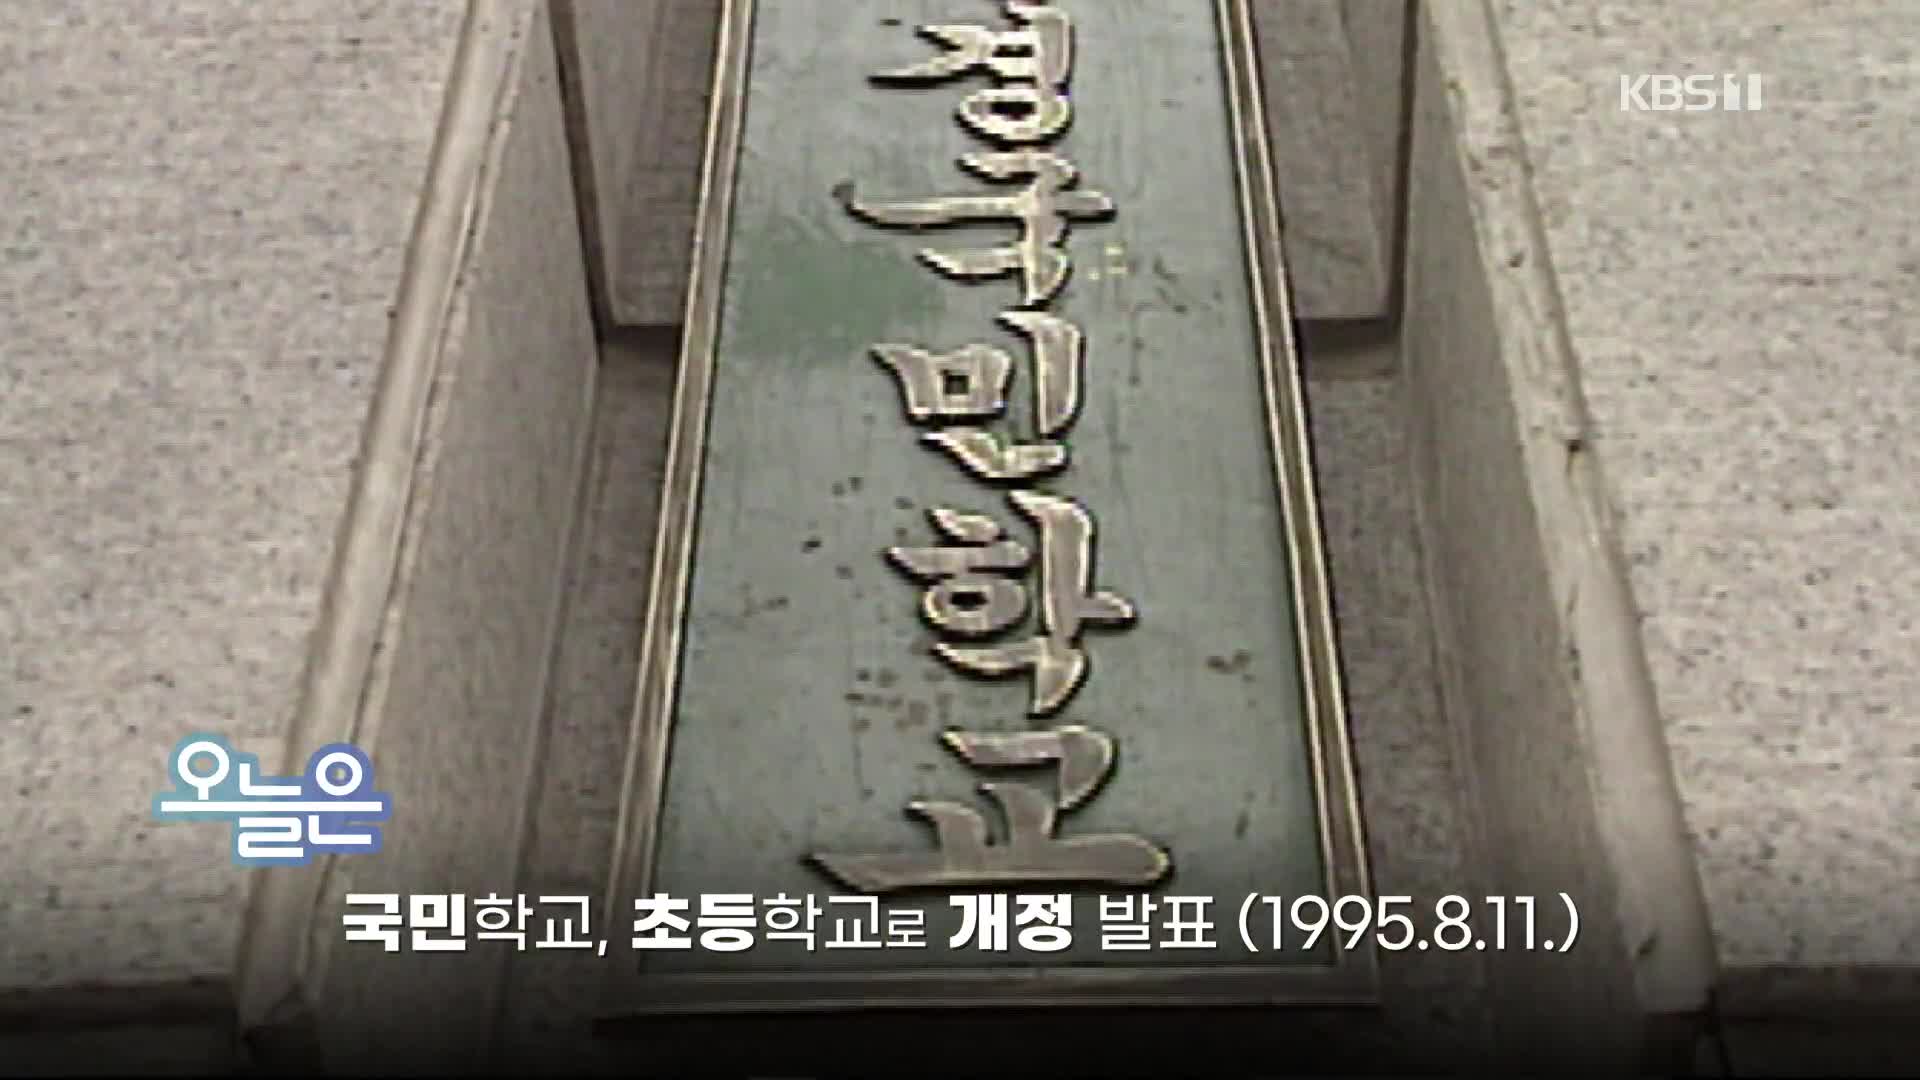 [오늘은] 국민학교, 초등학교로 개정 발표 (1995.8.11.)